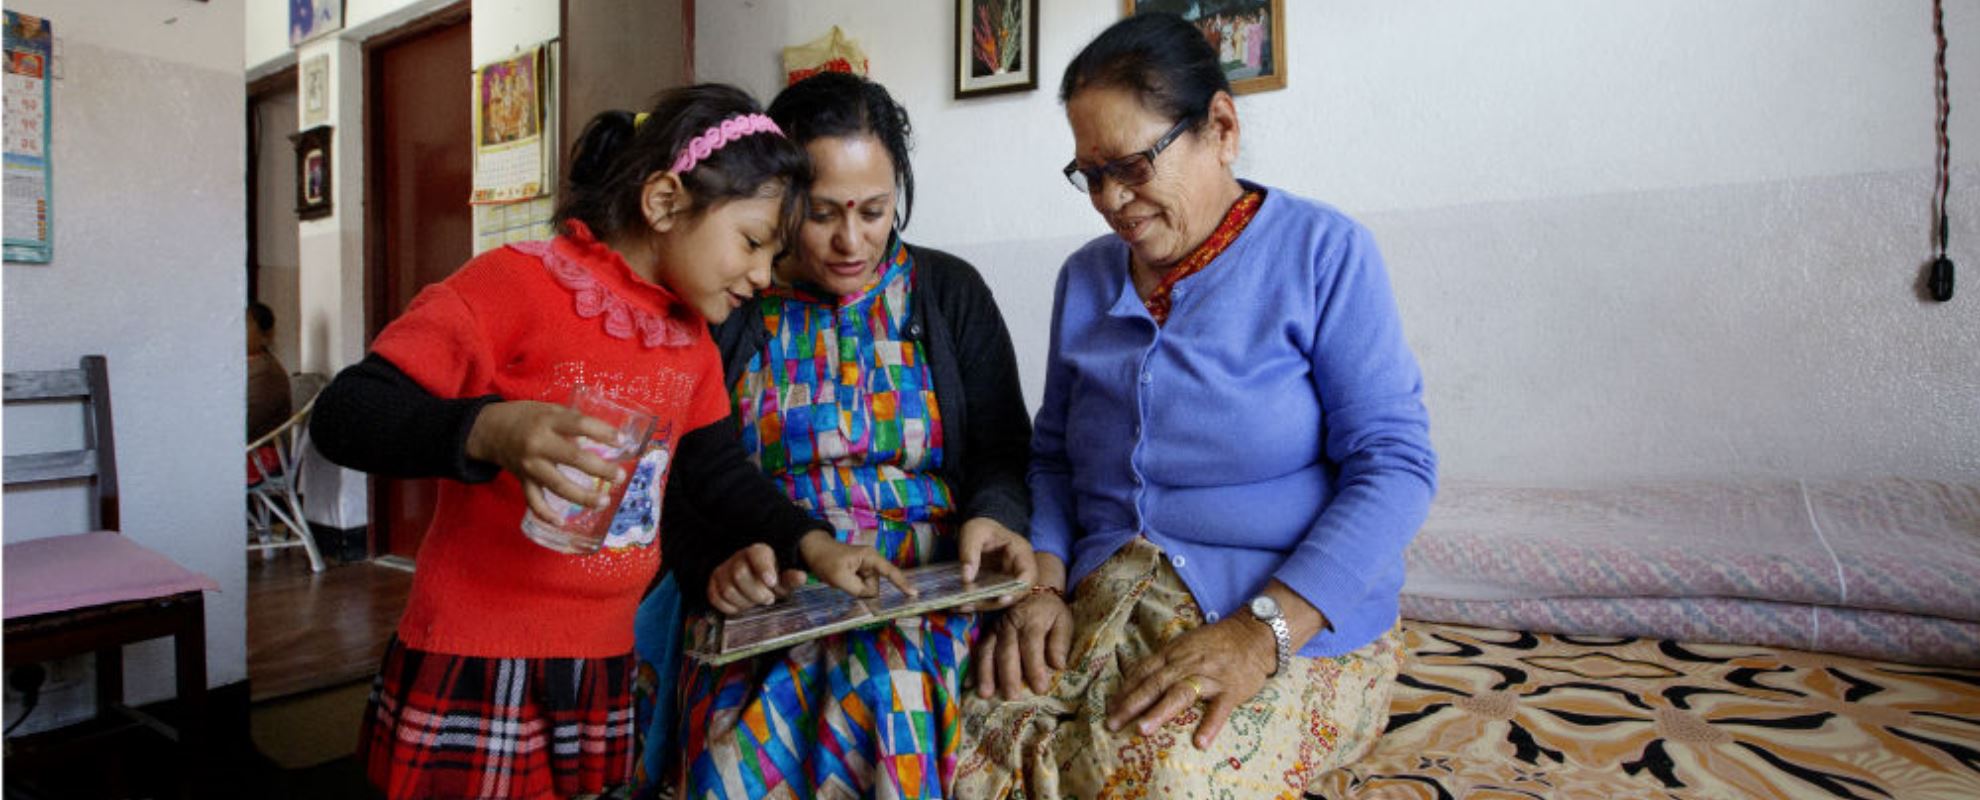 Her går omsorgen fra én generasjon til den neste: Reyna, Jyotsana Chhetri og SOS-mor Kanchu Regmi. Foto: Nina Ruud